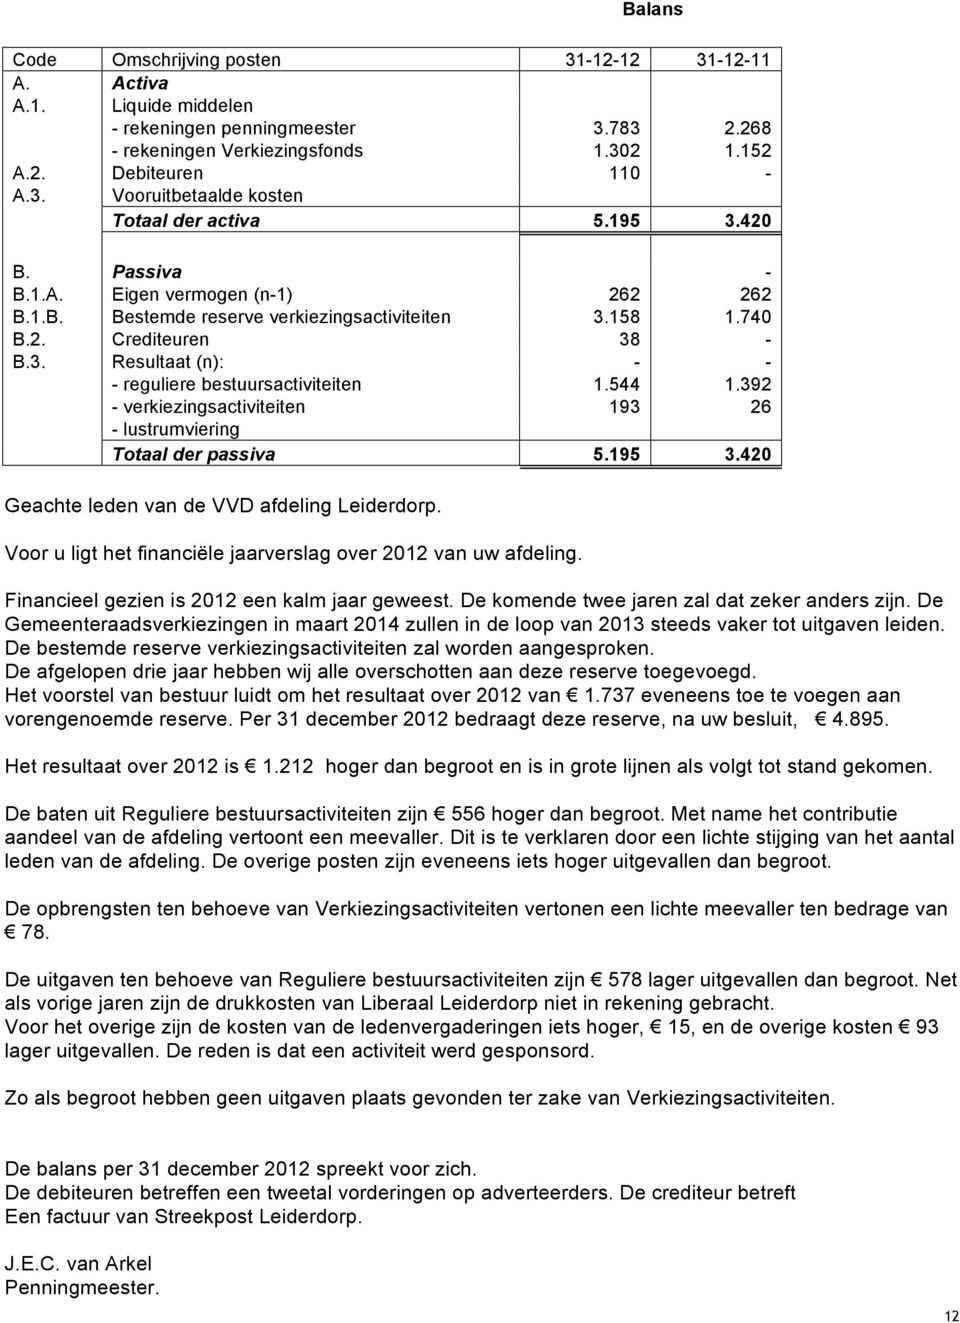 544 1.392 - verkiezingsactiviteiten 193 26 - lustrumviering Totaal der passiva 5.195 3.420 Geachte leden van de VVD afdeling Leiderdorp.